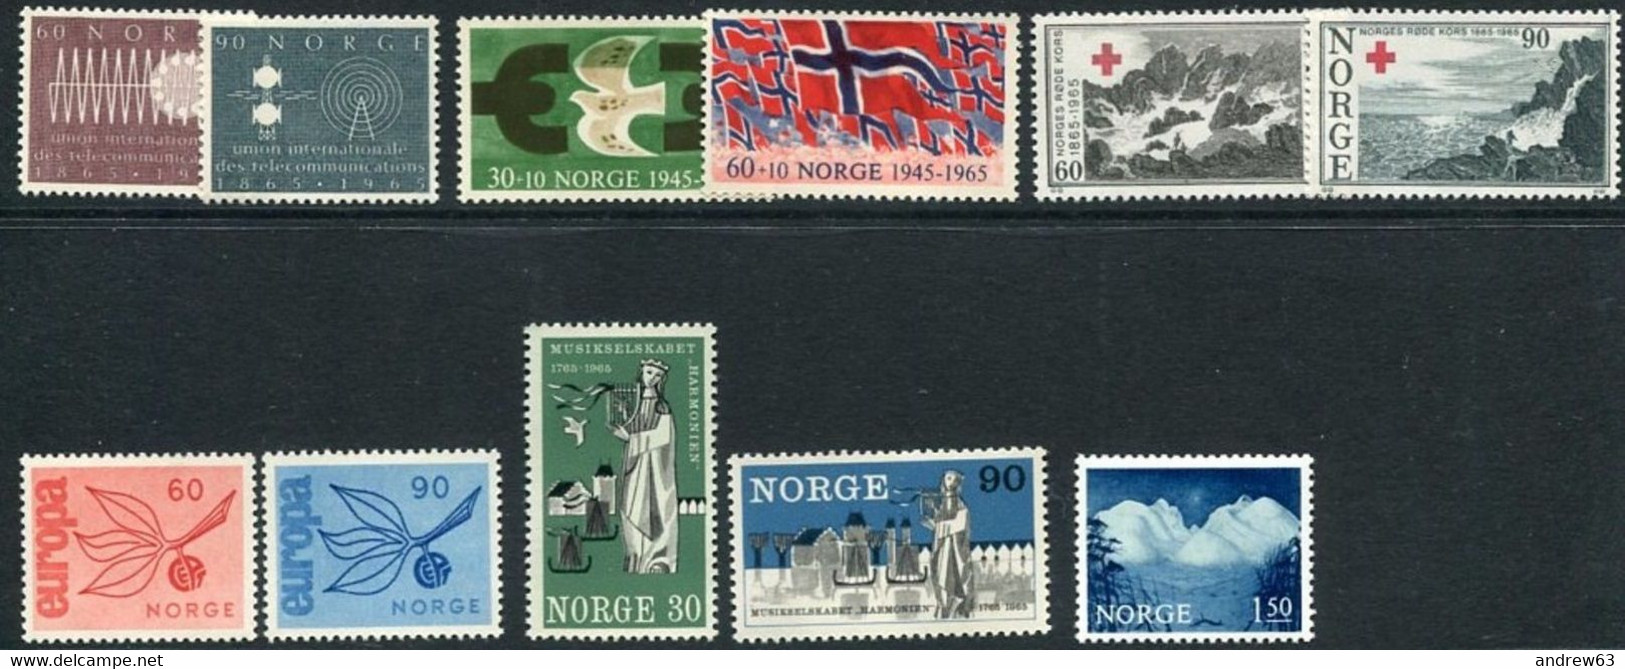 NORVEGIA - Norge - Norwegen - Norway - Collezione montata su Album LIGHTHOUSE - 1863-1986 - Vedi foto e offerte separate